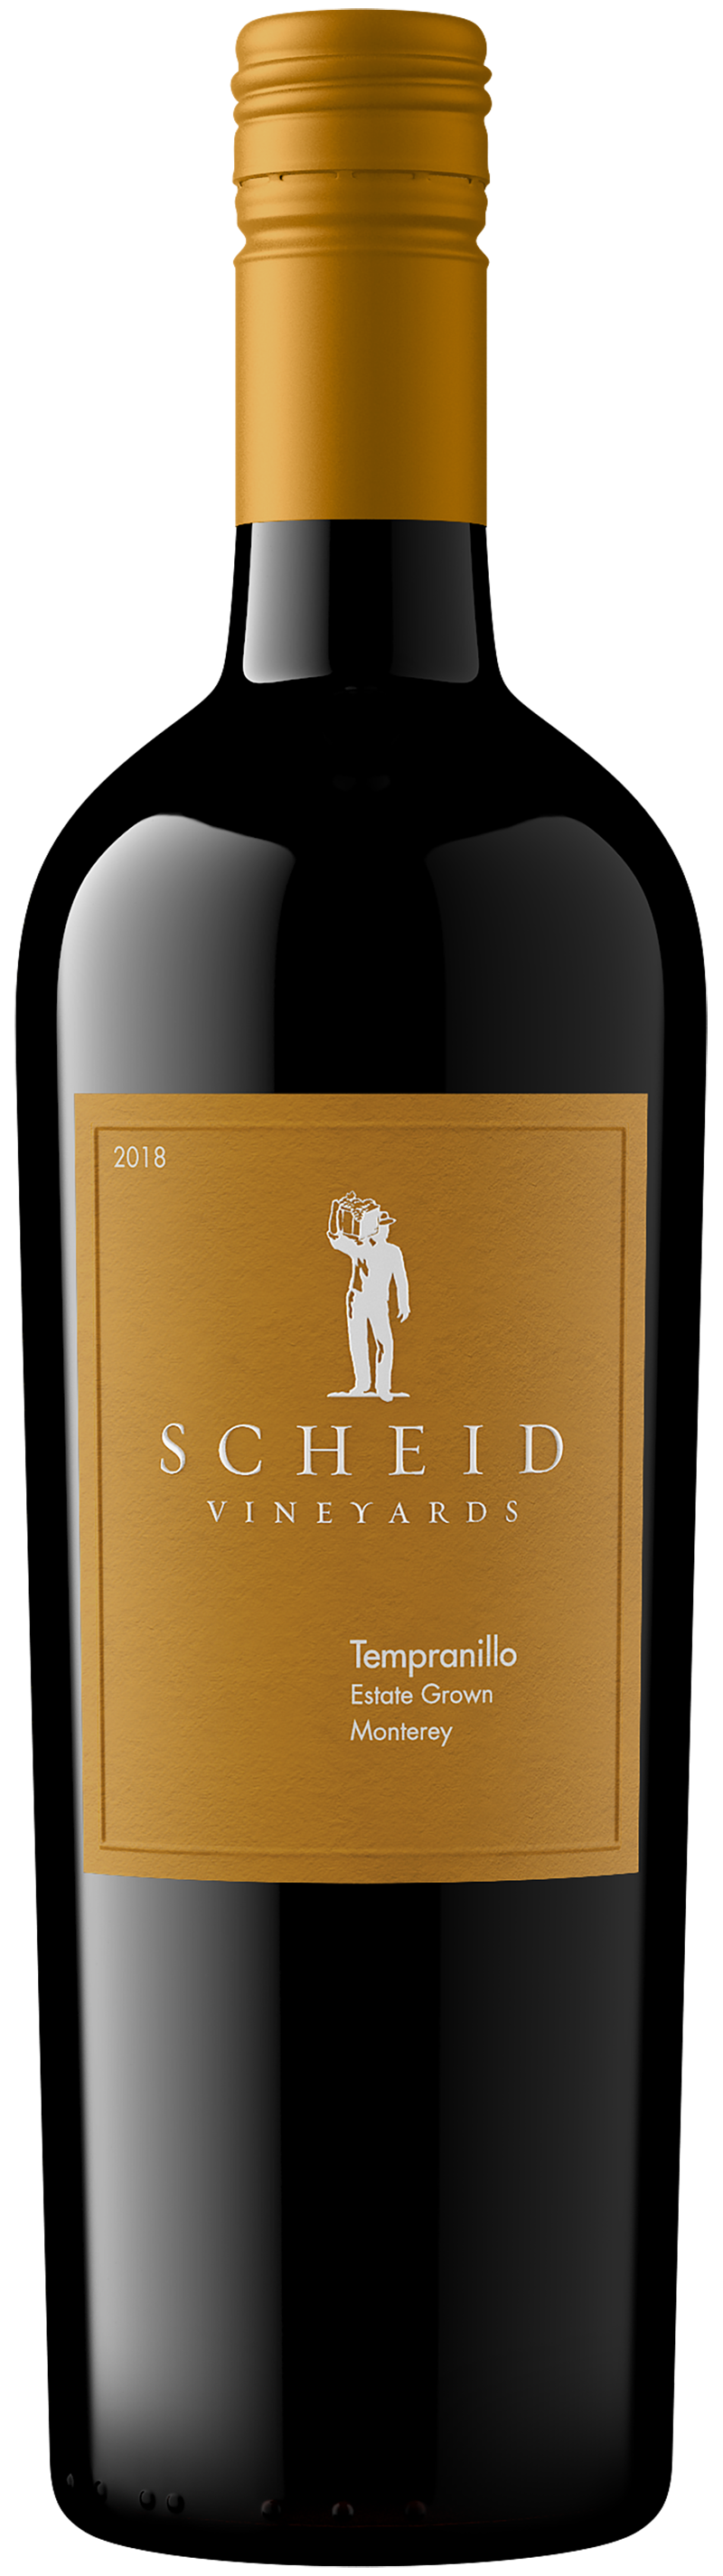 Scheid - Vineyards Products Tempranillo - 2018